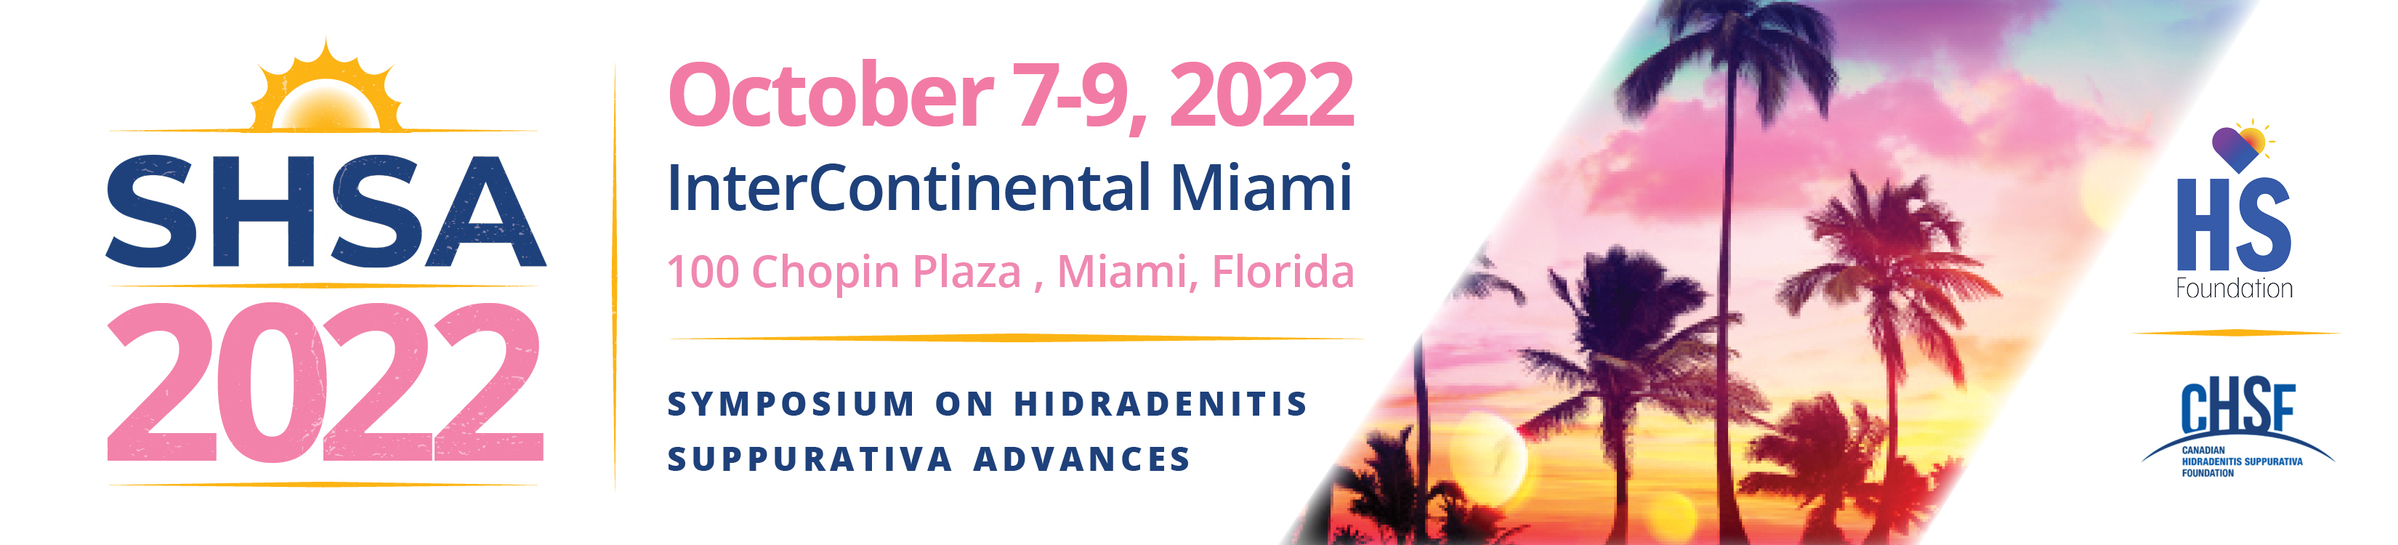 7th Annual Symposium on Hidradenitis Suppurativa Advances